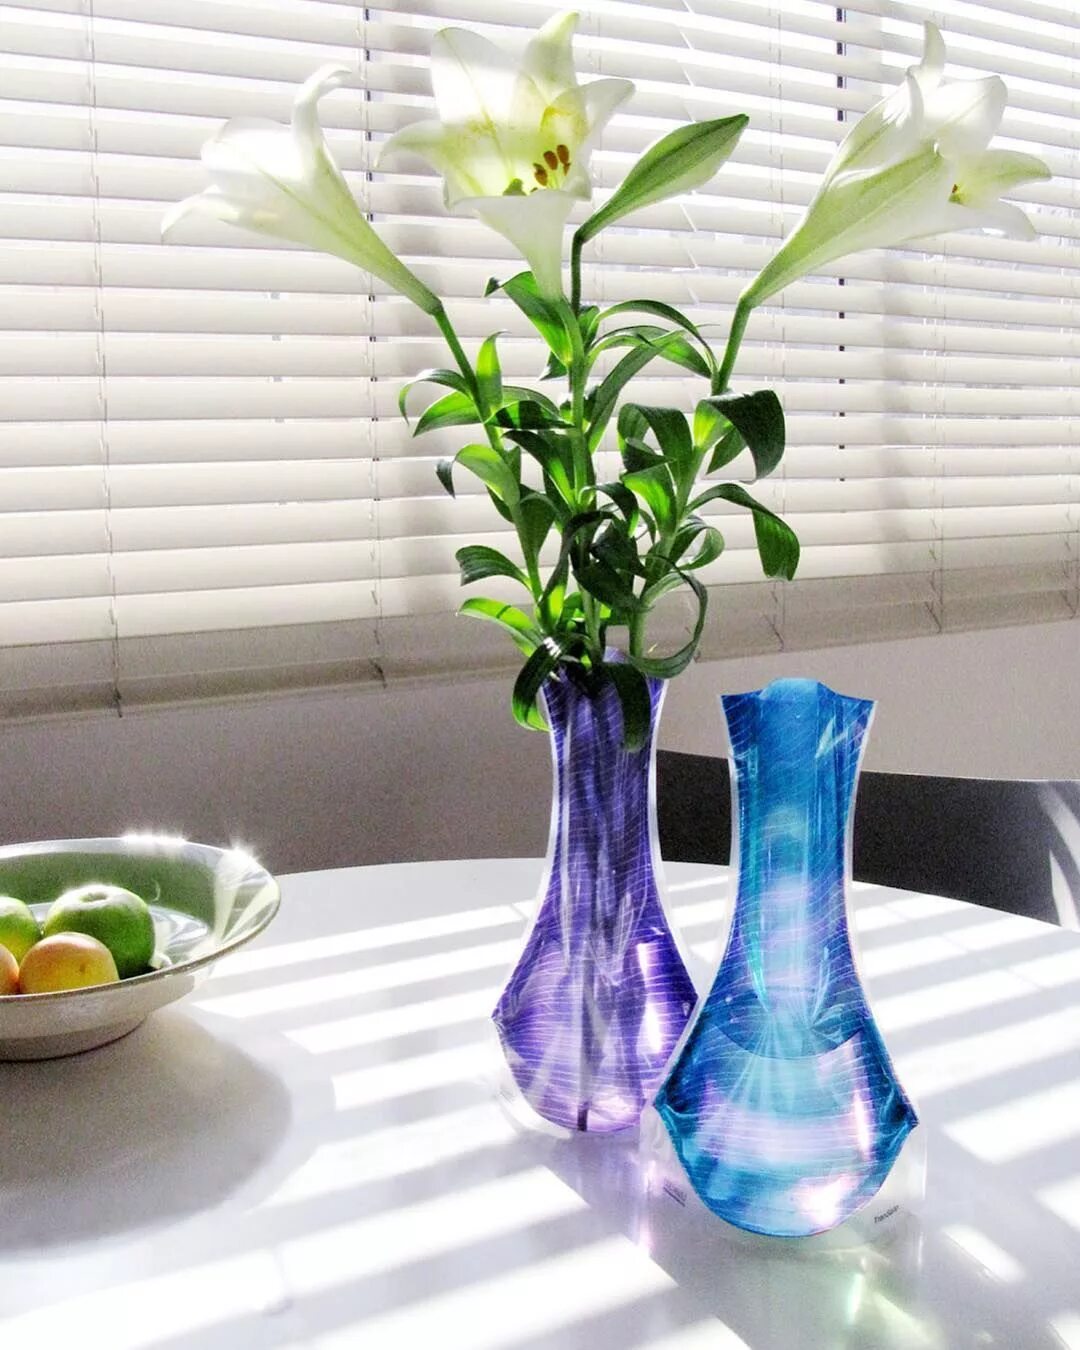 Что кроме цветов можно поставить в вазу. Ваза покрасить. Цветы невысокие для вазы. Цветочки в вазу поставила. Сразу в вазу.